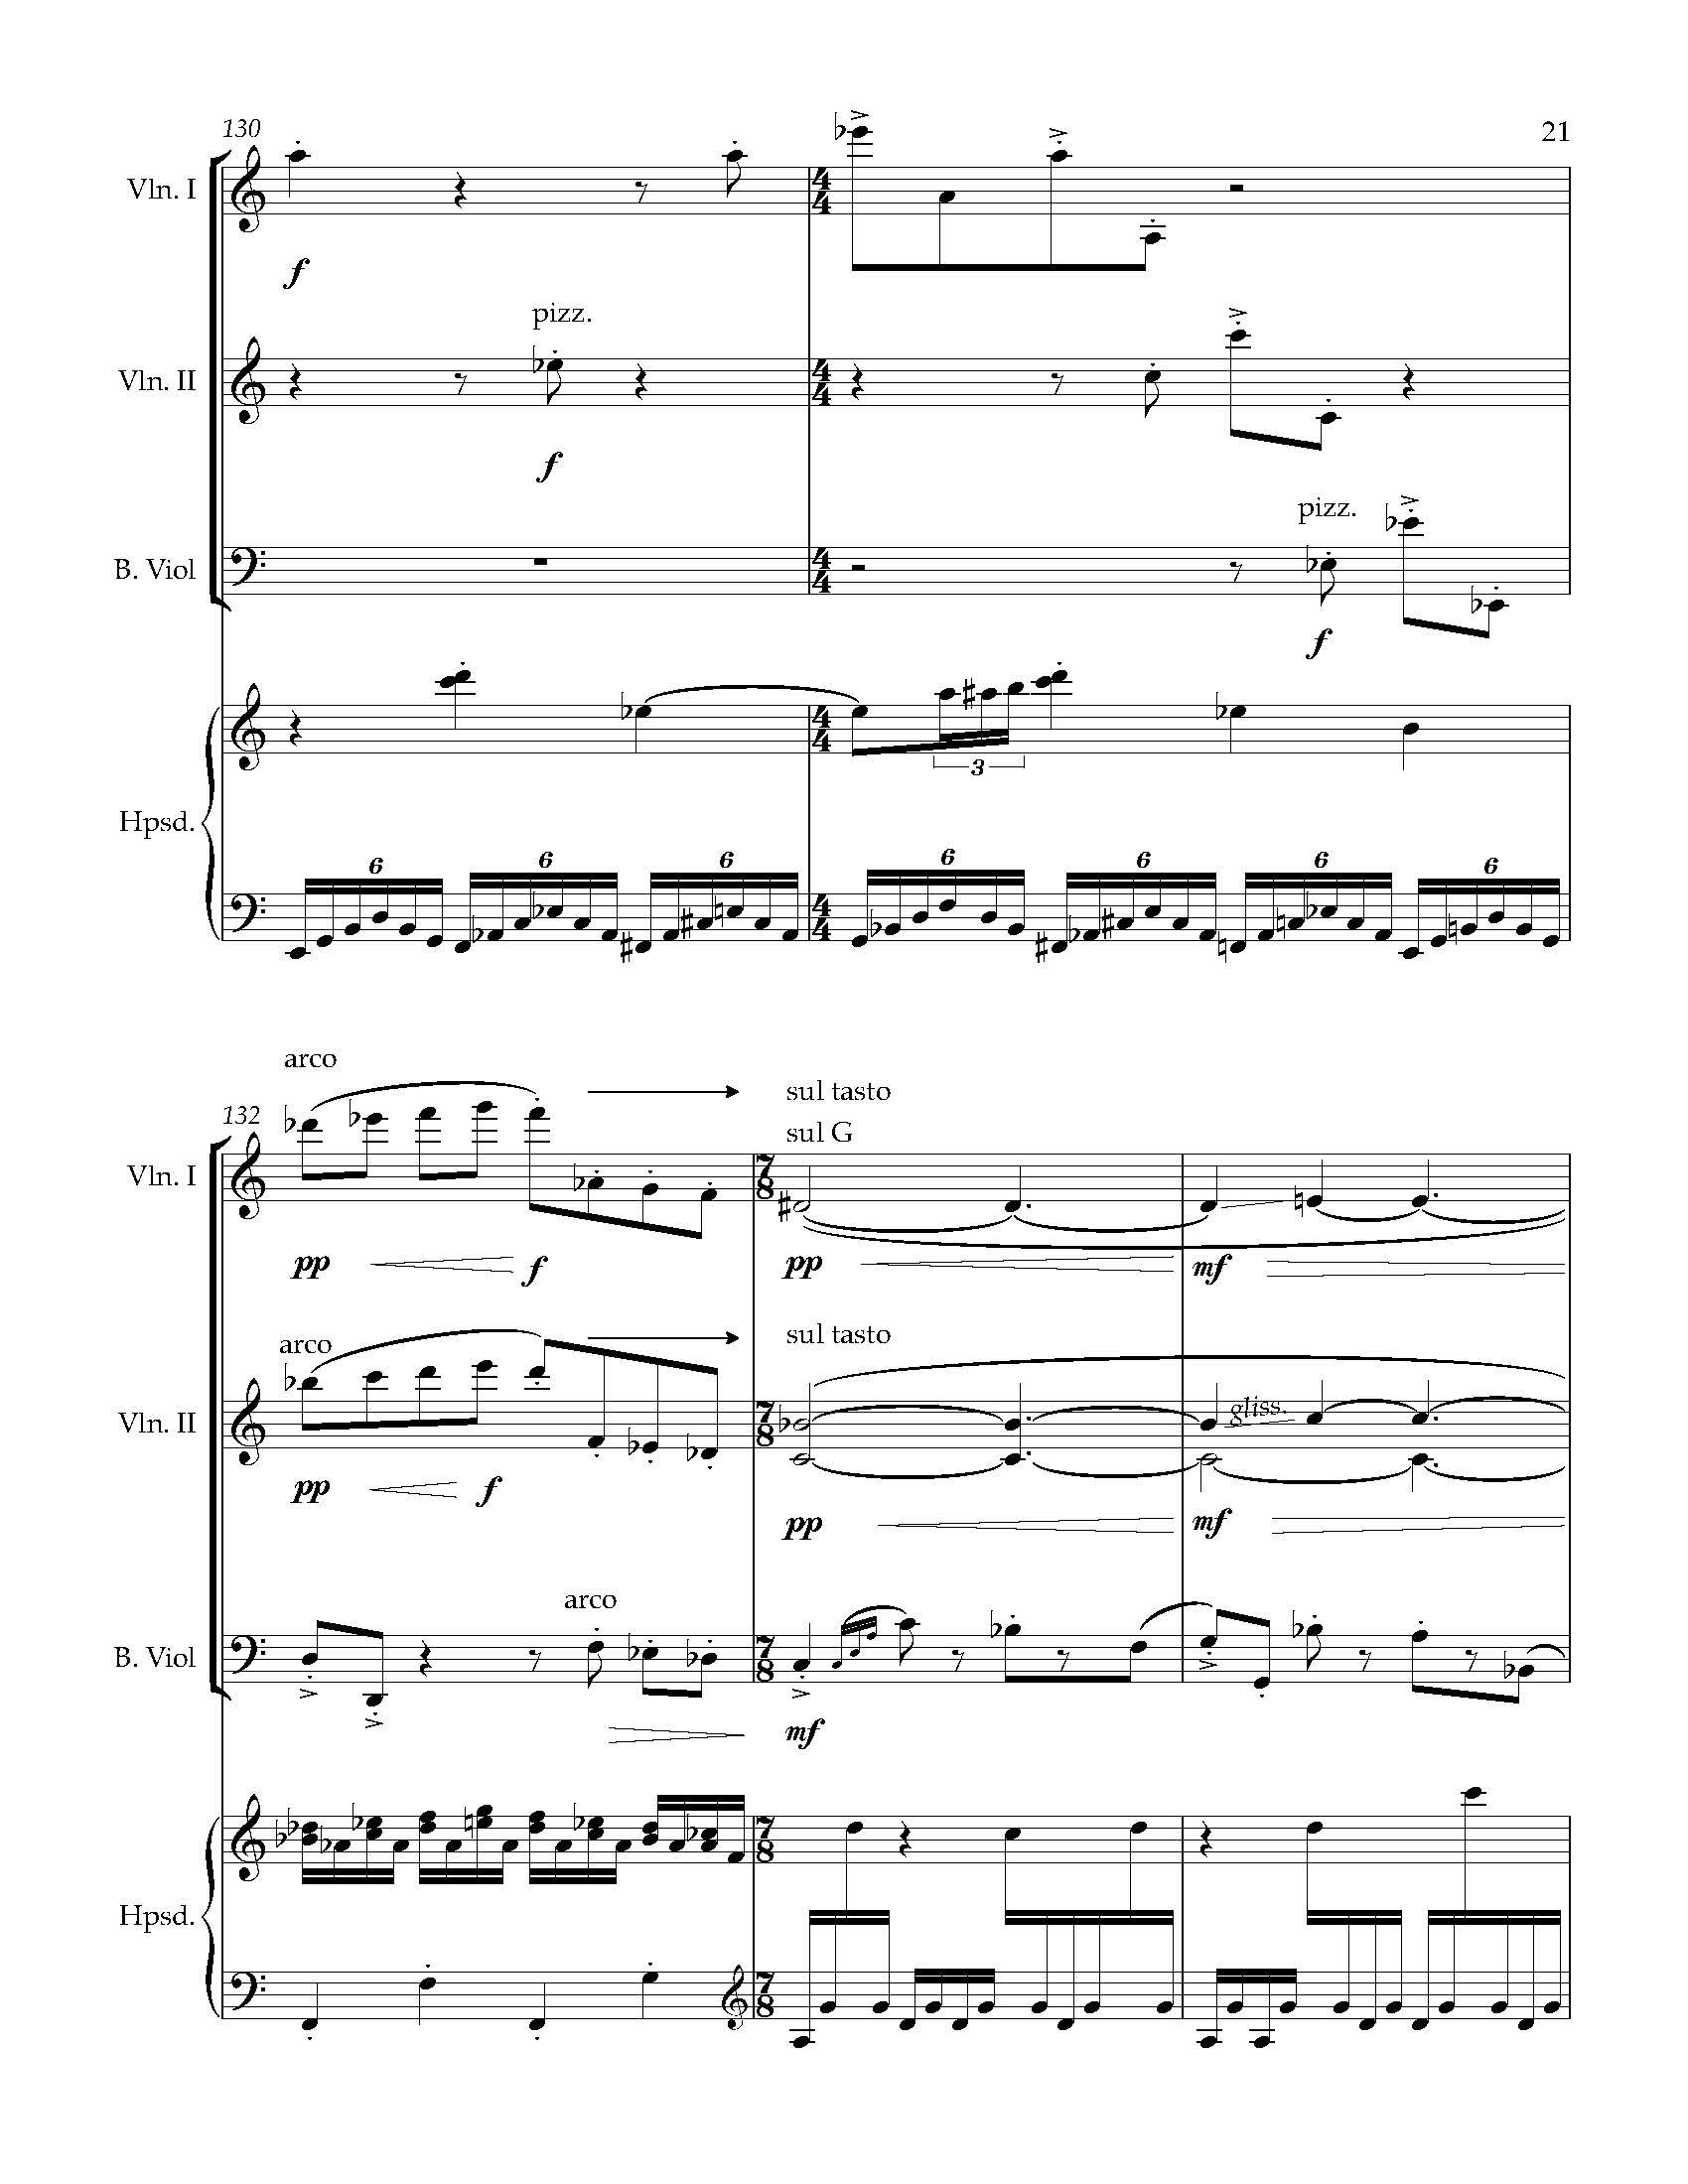 Sonata Sonare - Complete Score_Page_27.jpg